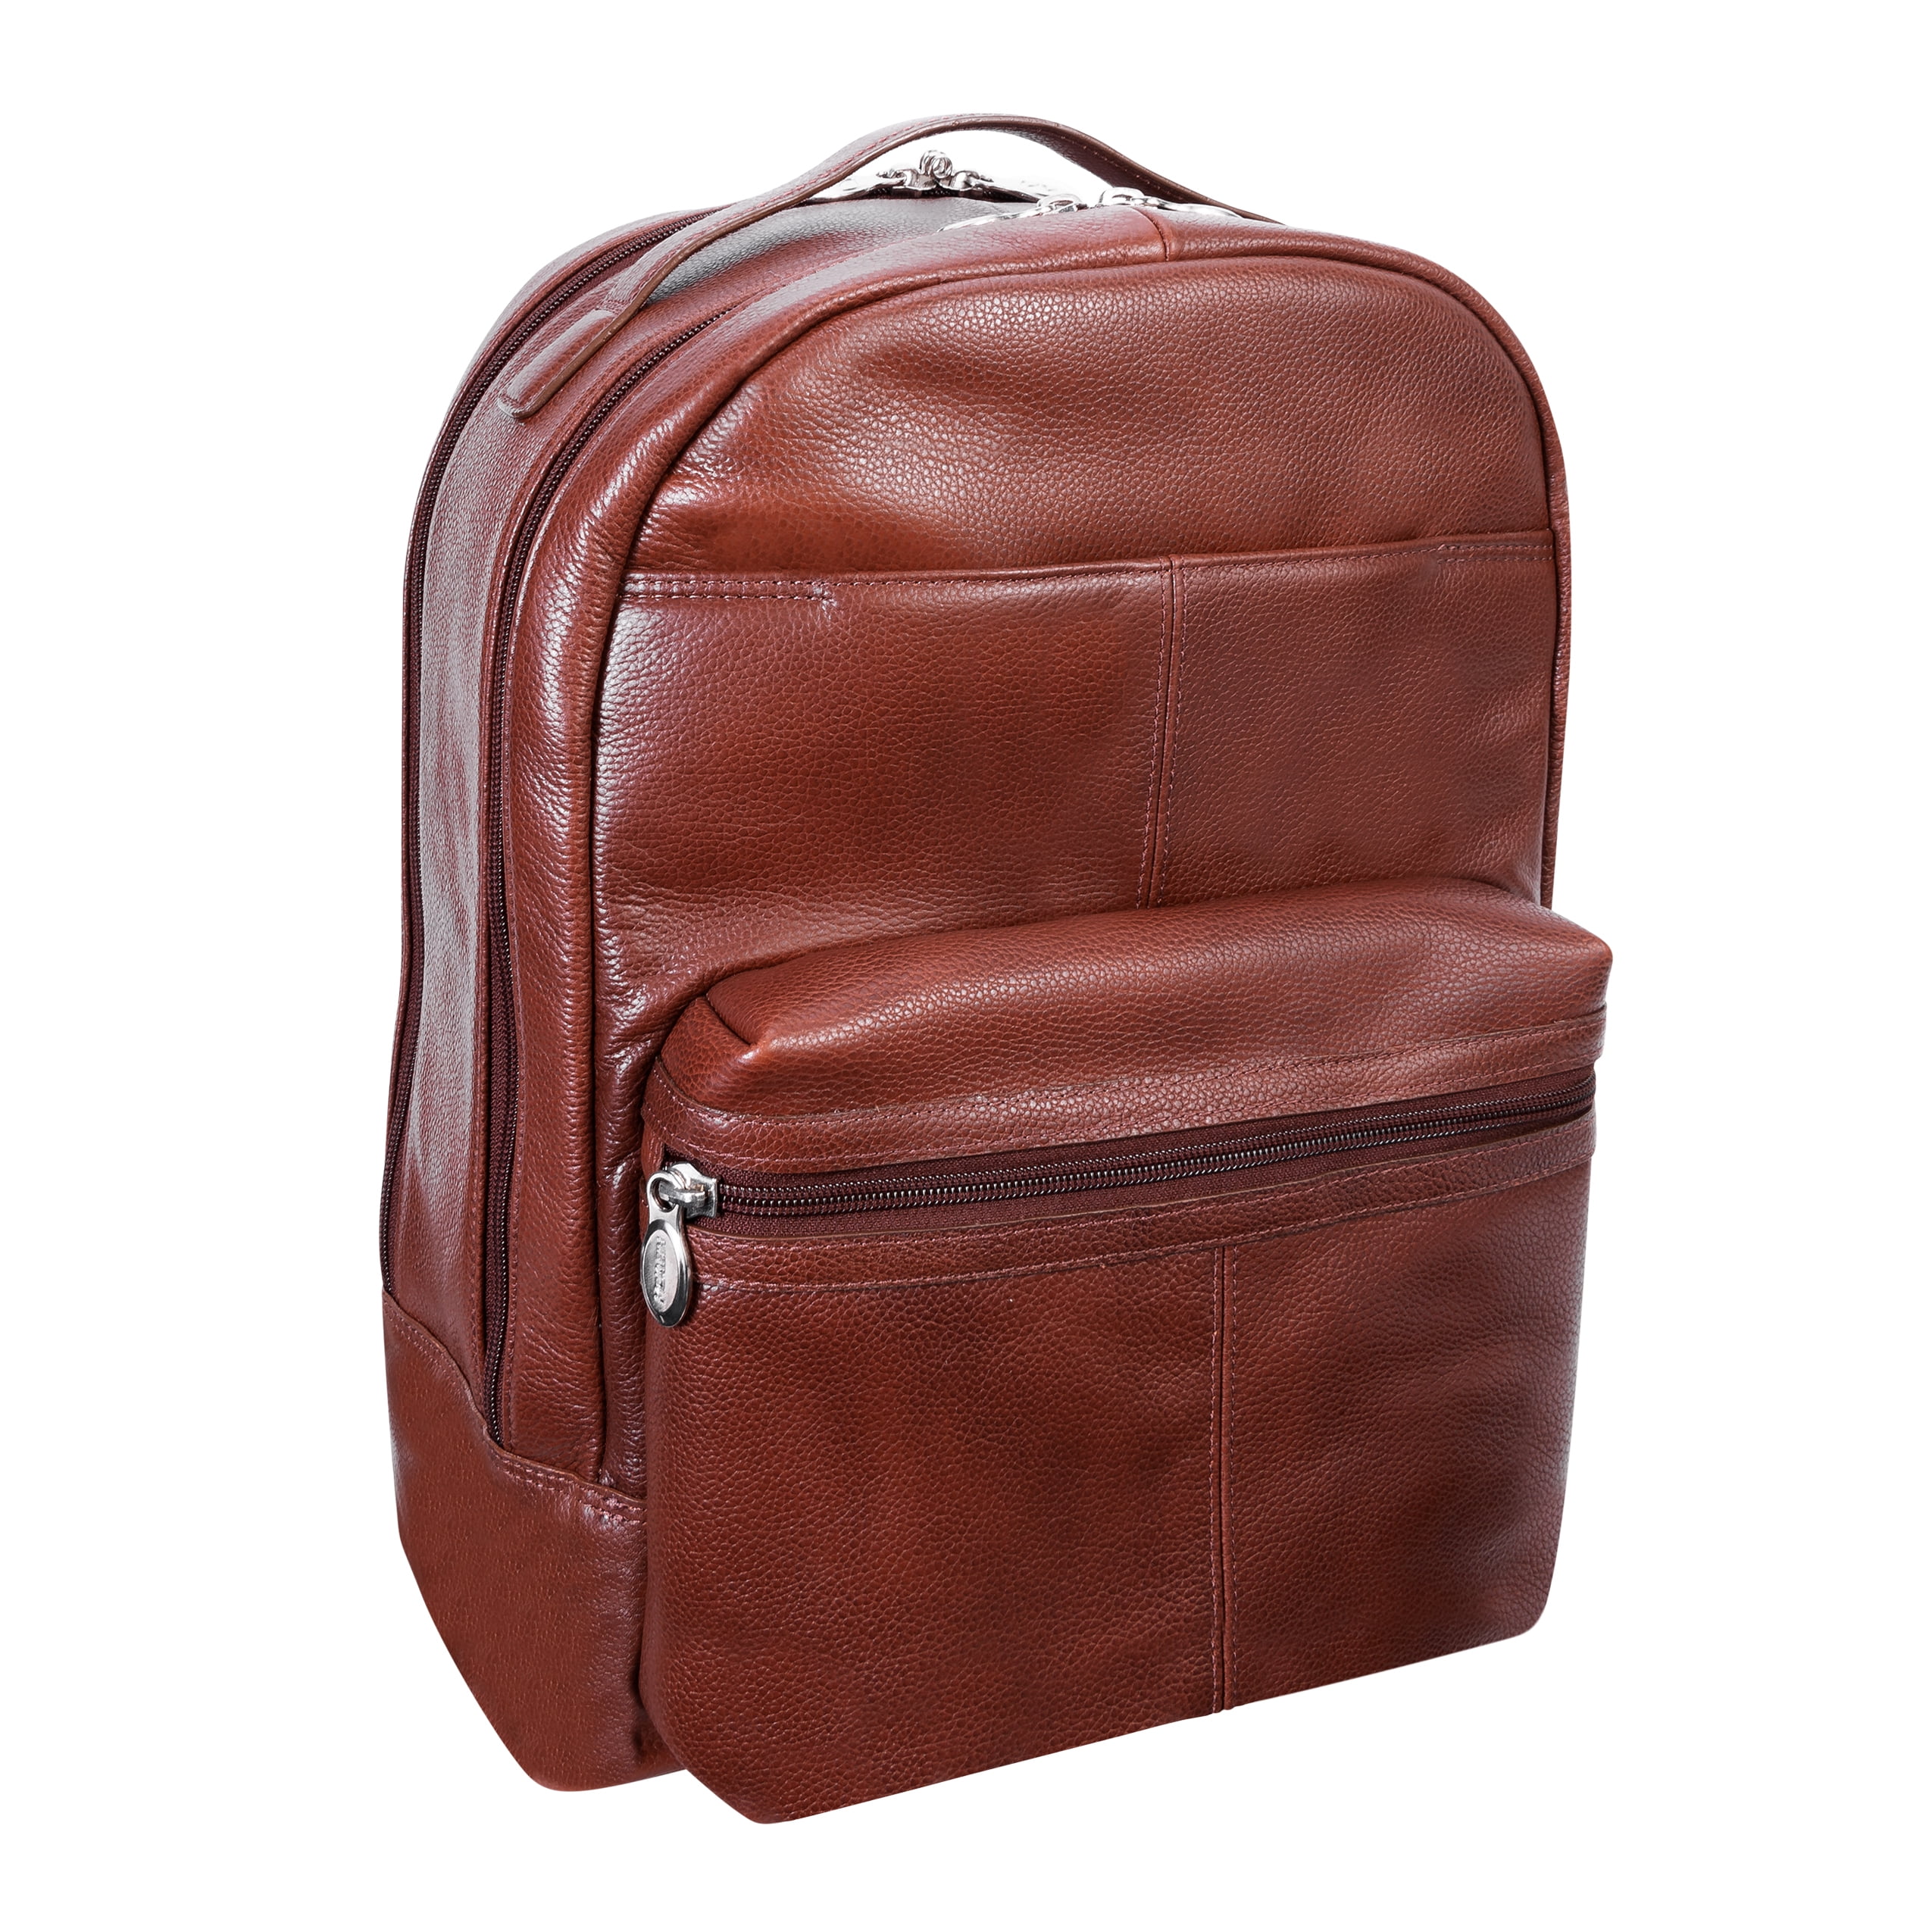 McKlein PARKER, Leather Dual Compartment Laptop Backpack, Pebble Grain ...